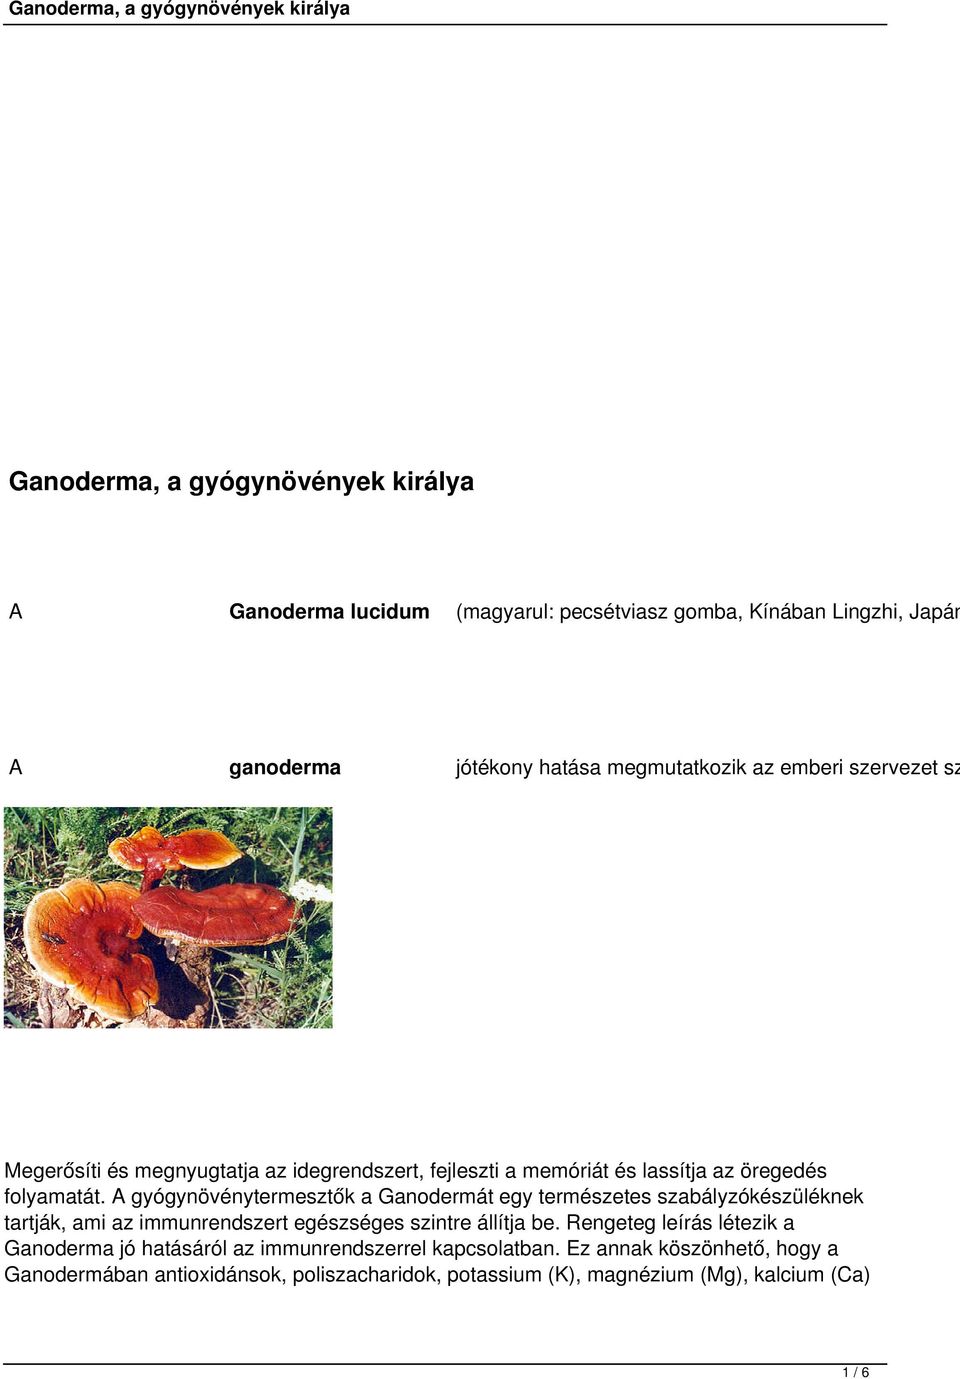 A gyógynövénytermesztők a Ganodermát egy természetes szabályzókészüléknek tartják, ami az immunrendszert egészséges szintre állítja be.